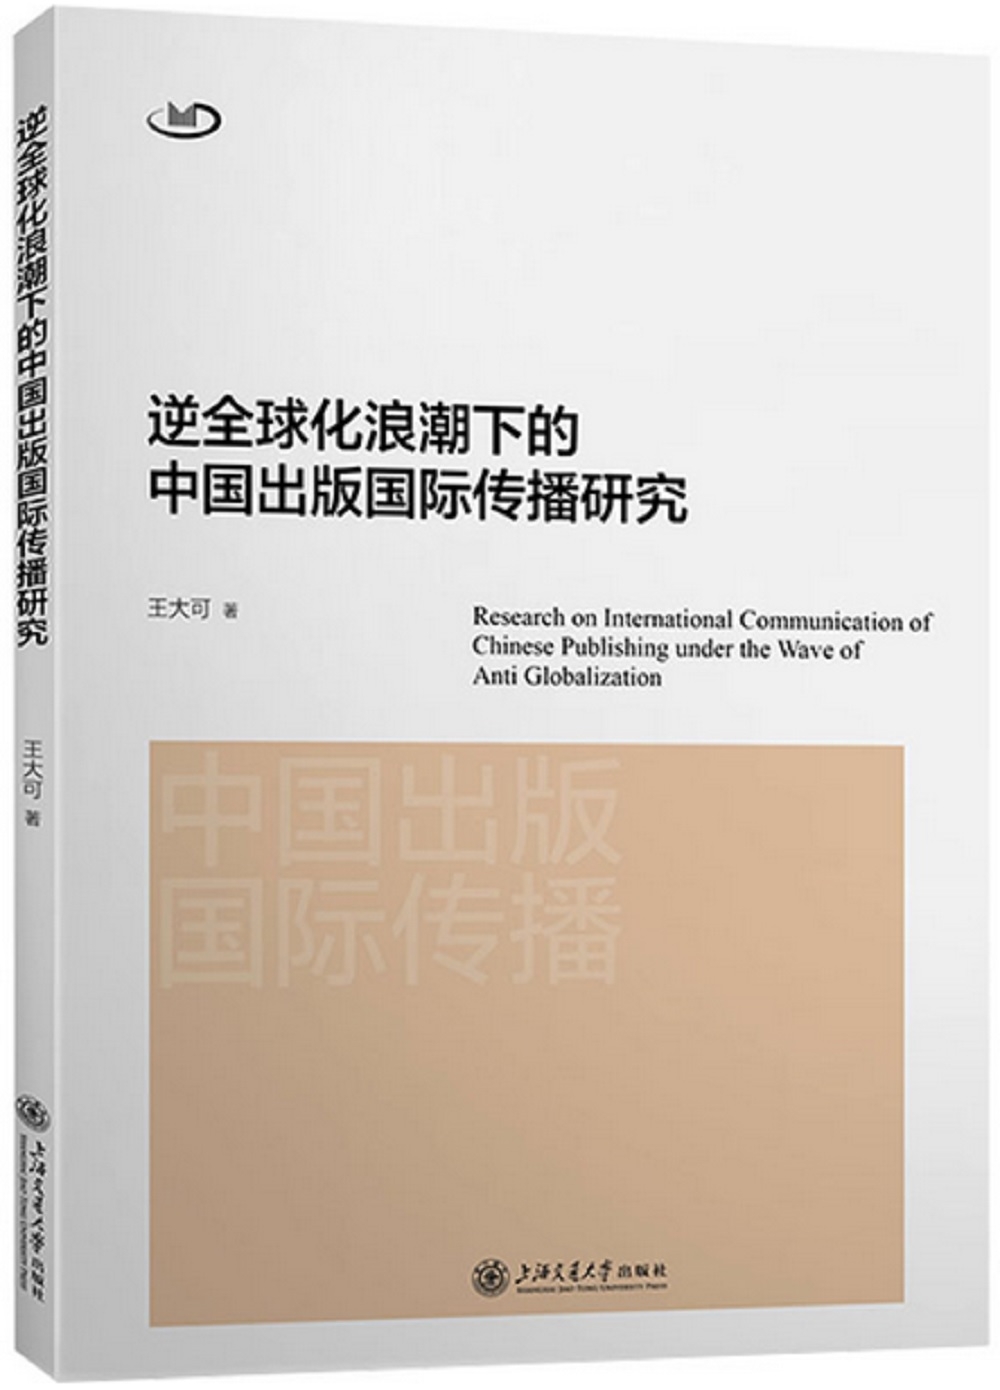 逆全球化浪潮下的中國出版國際傳播研究